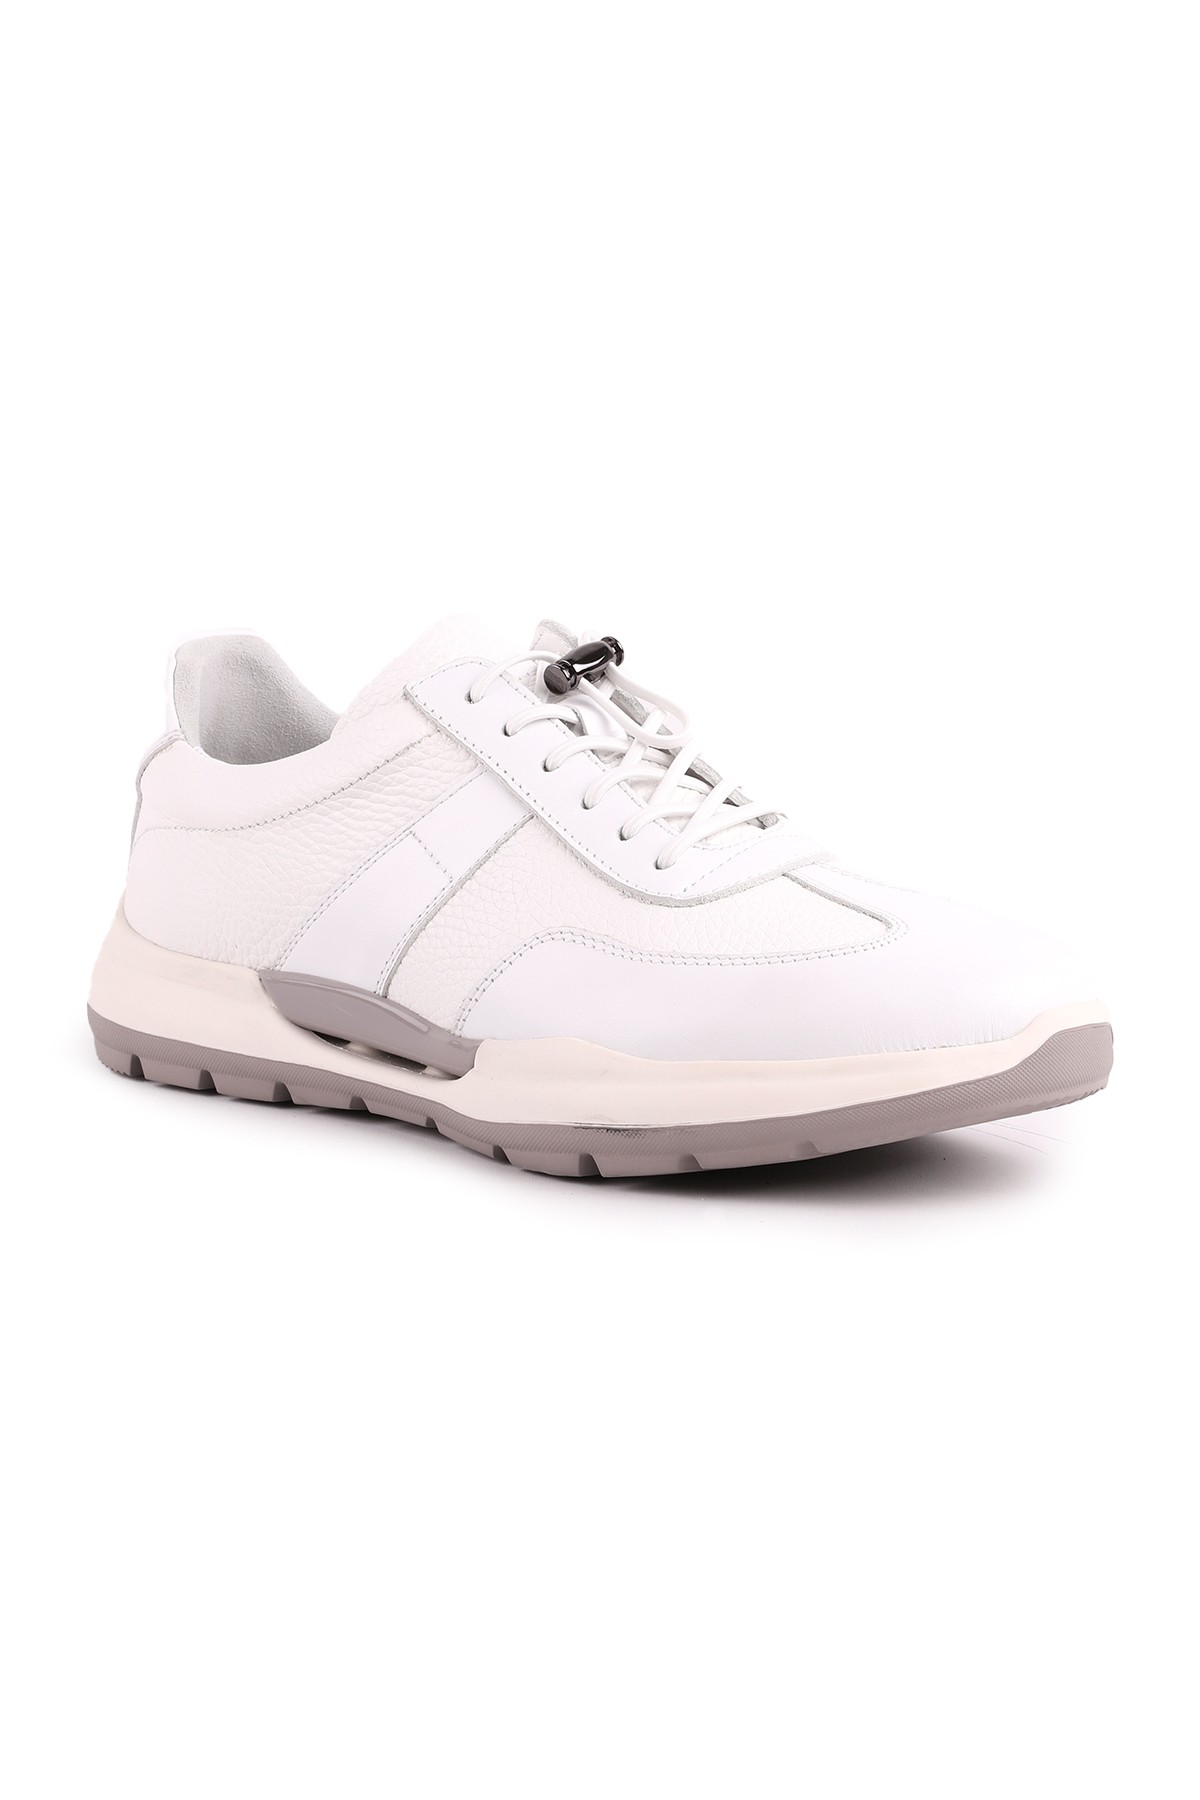 Libero L5223 Erkek Deri Casual Ayakkabı - Beyaz